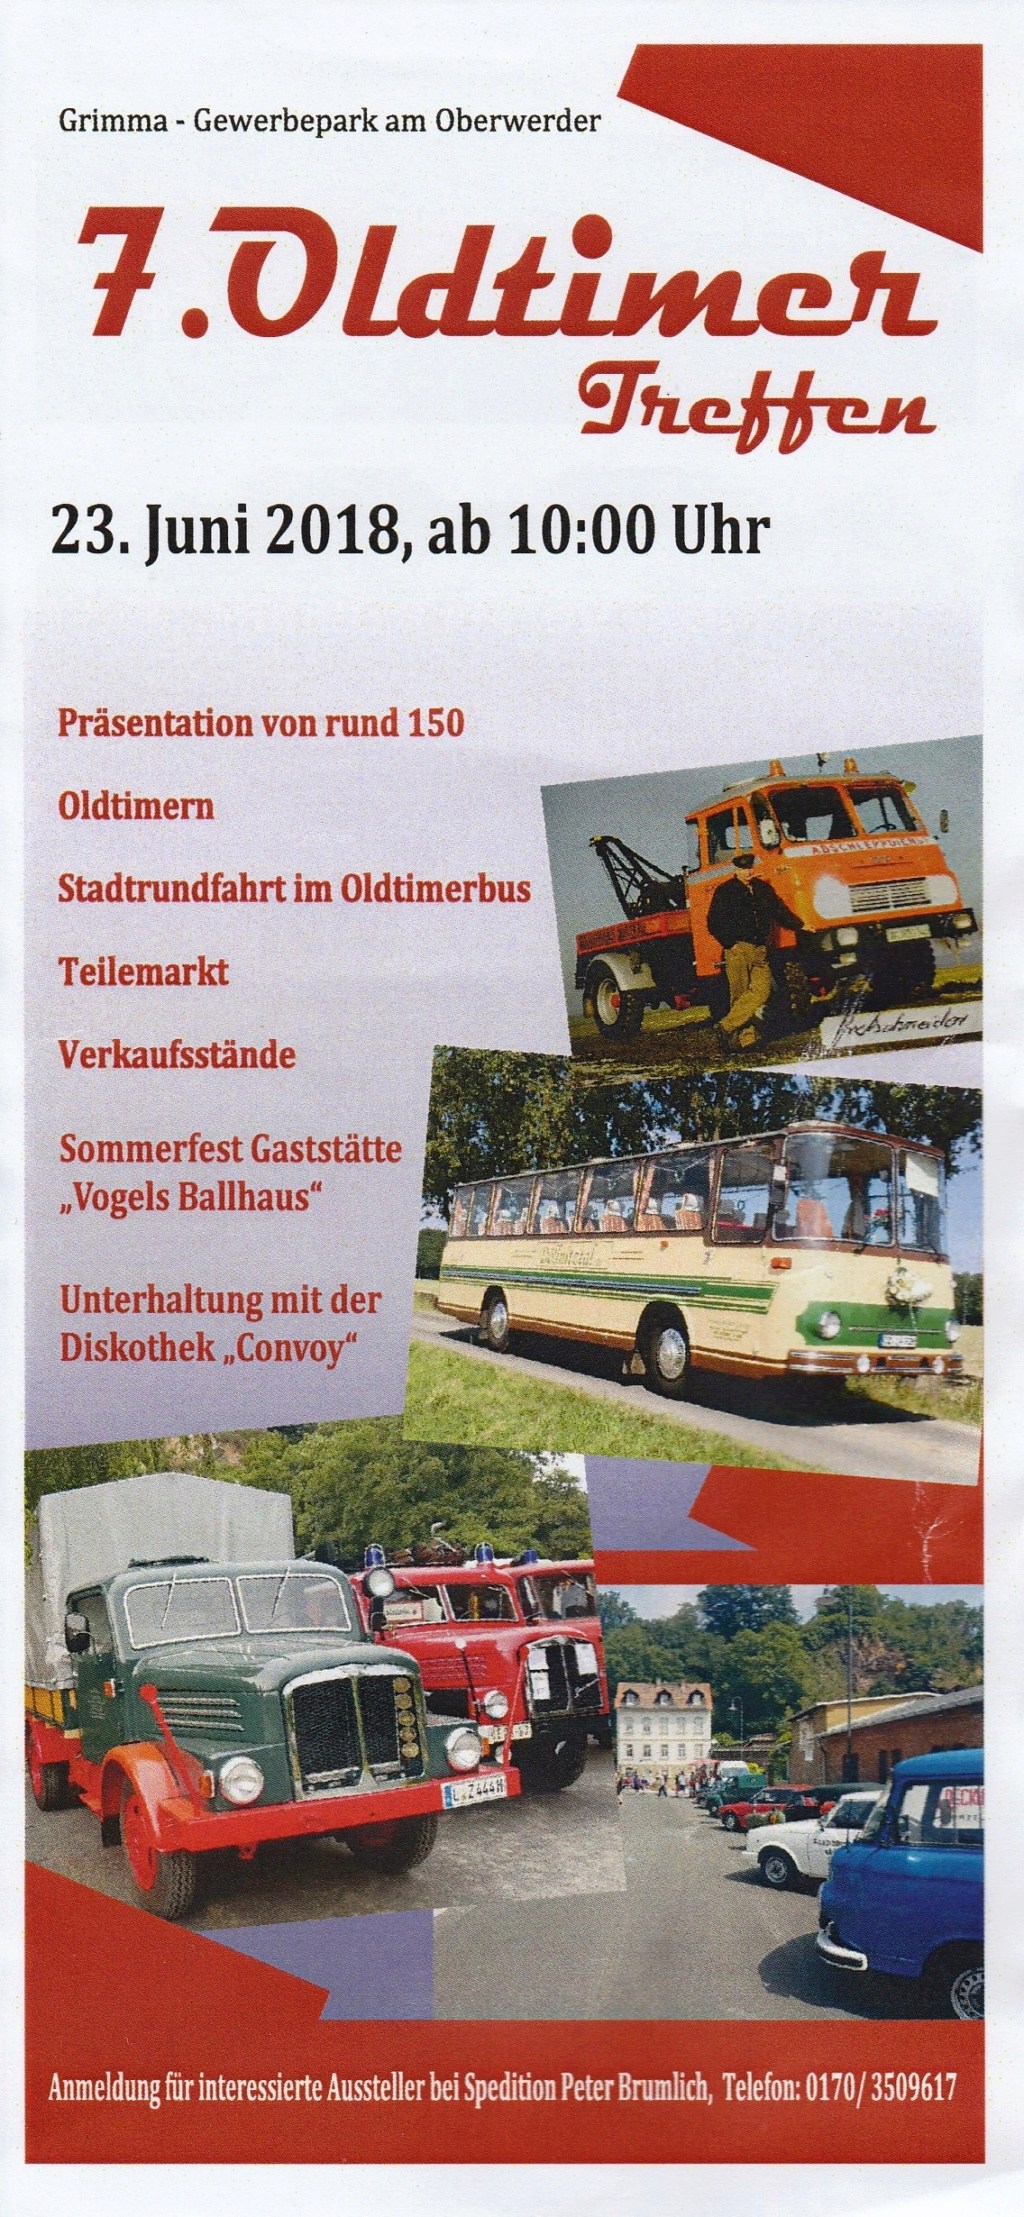 Oldtimer Treffen 23.6.2018 in Grimma / Oberwerder Img_2055